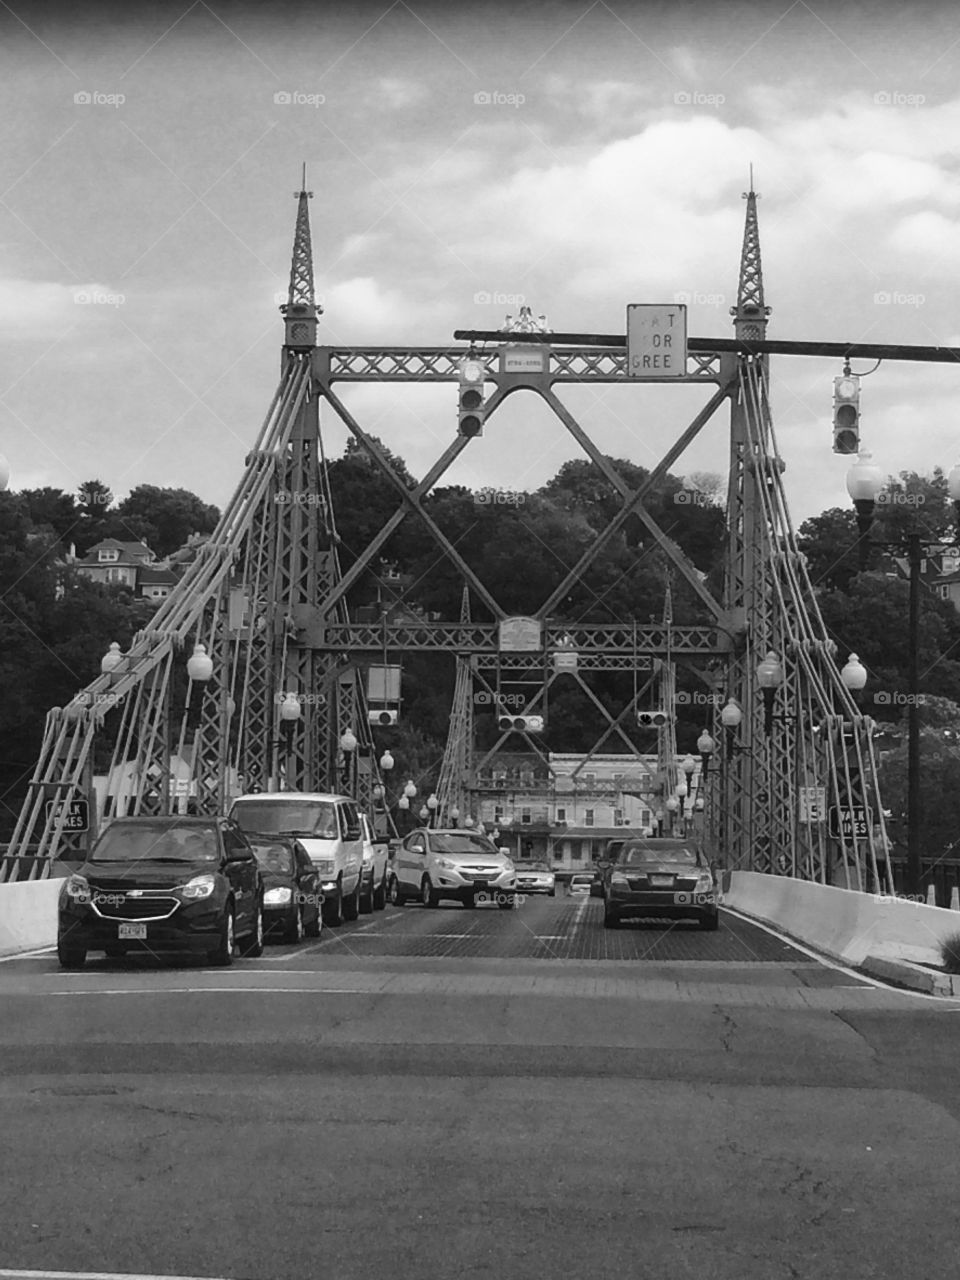 Easton, Pennsylvania free bridge